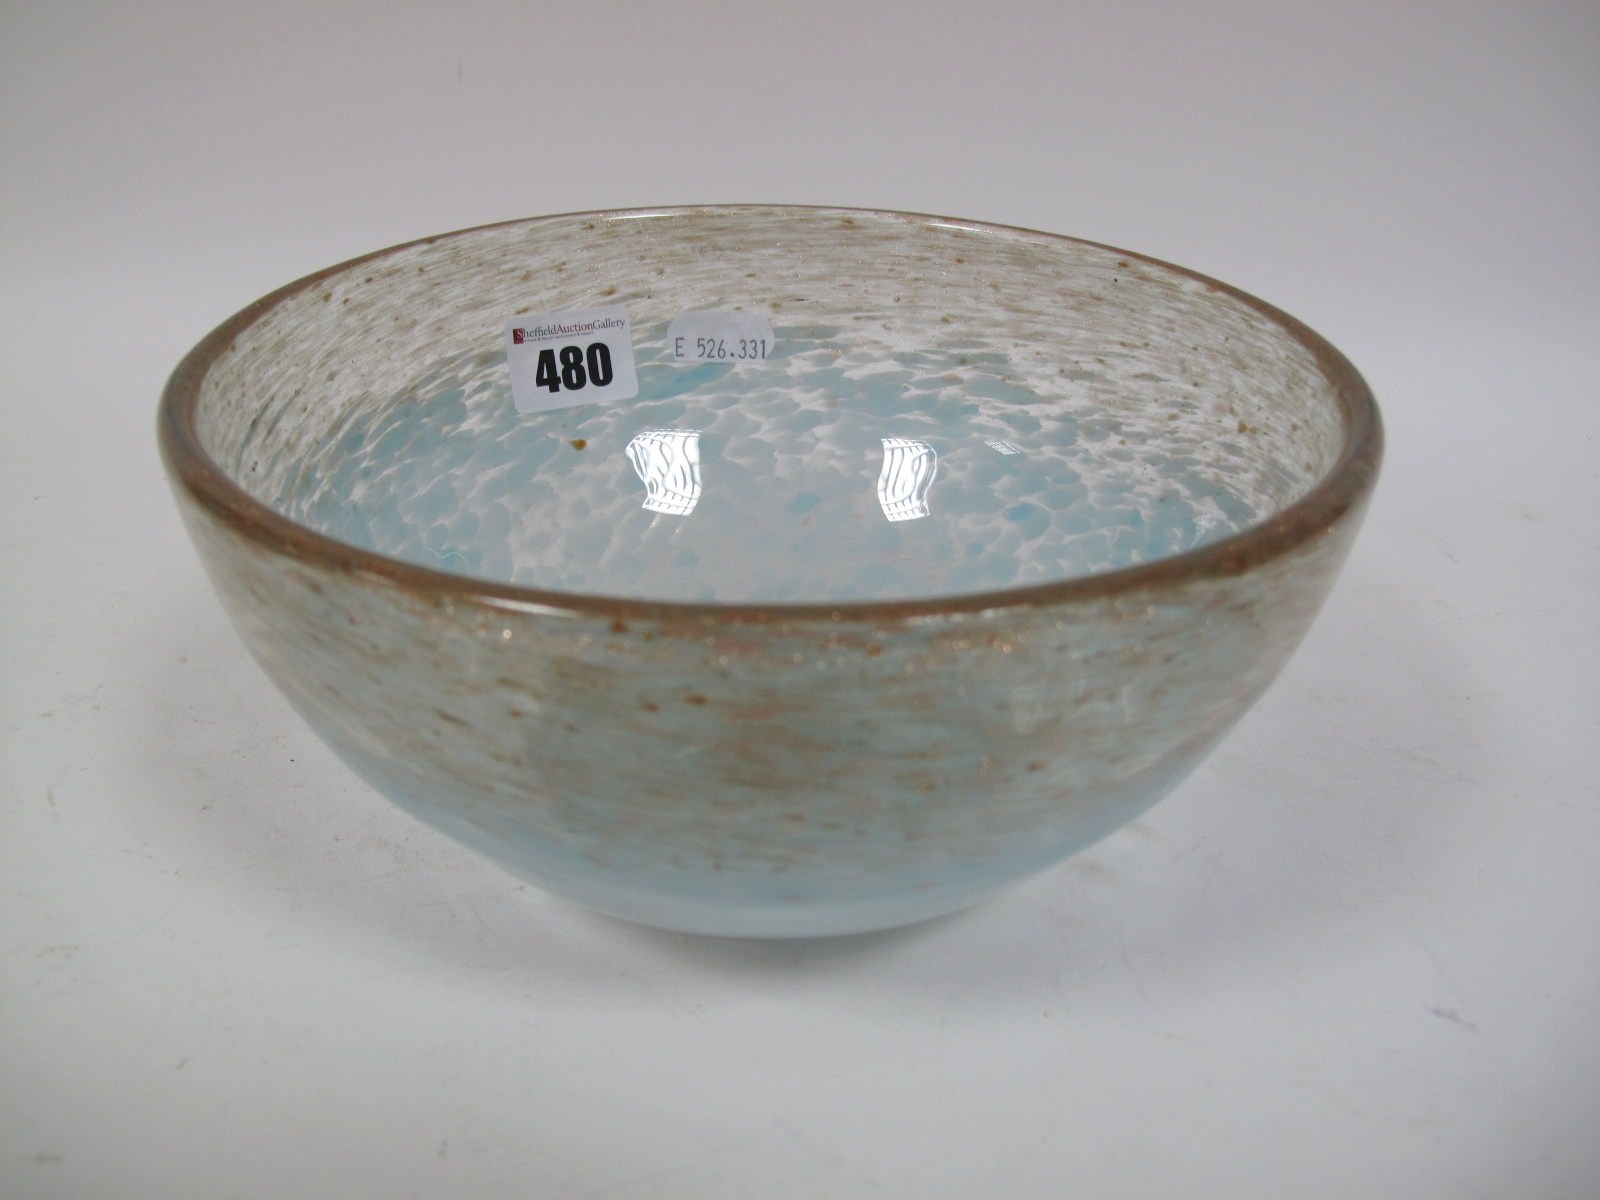 A Size VI Shape AF Circular Bowl, mottled light blue with aventurine border, paper label, 19.9cms